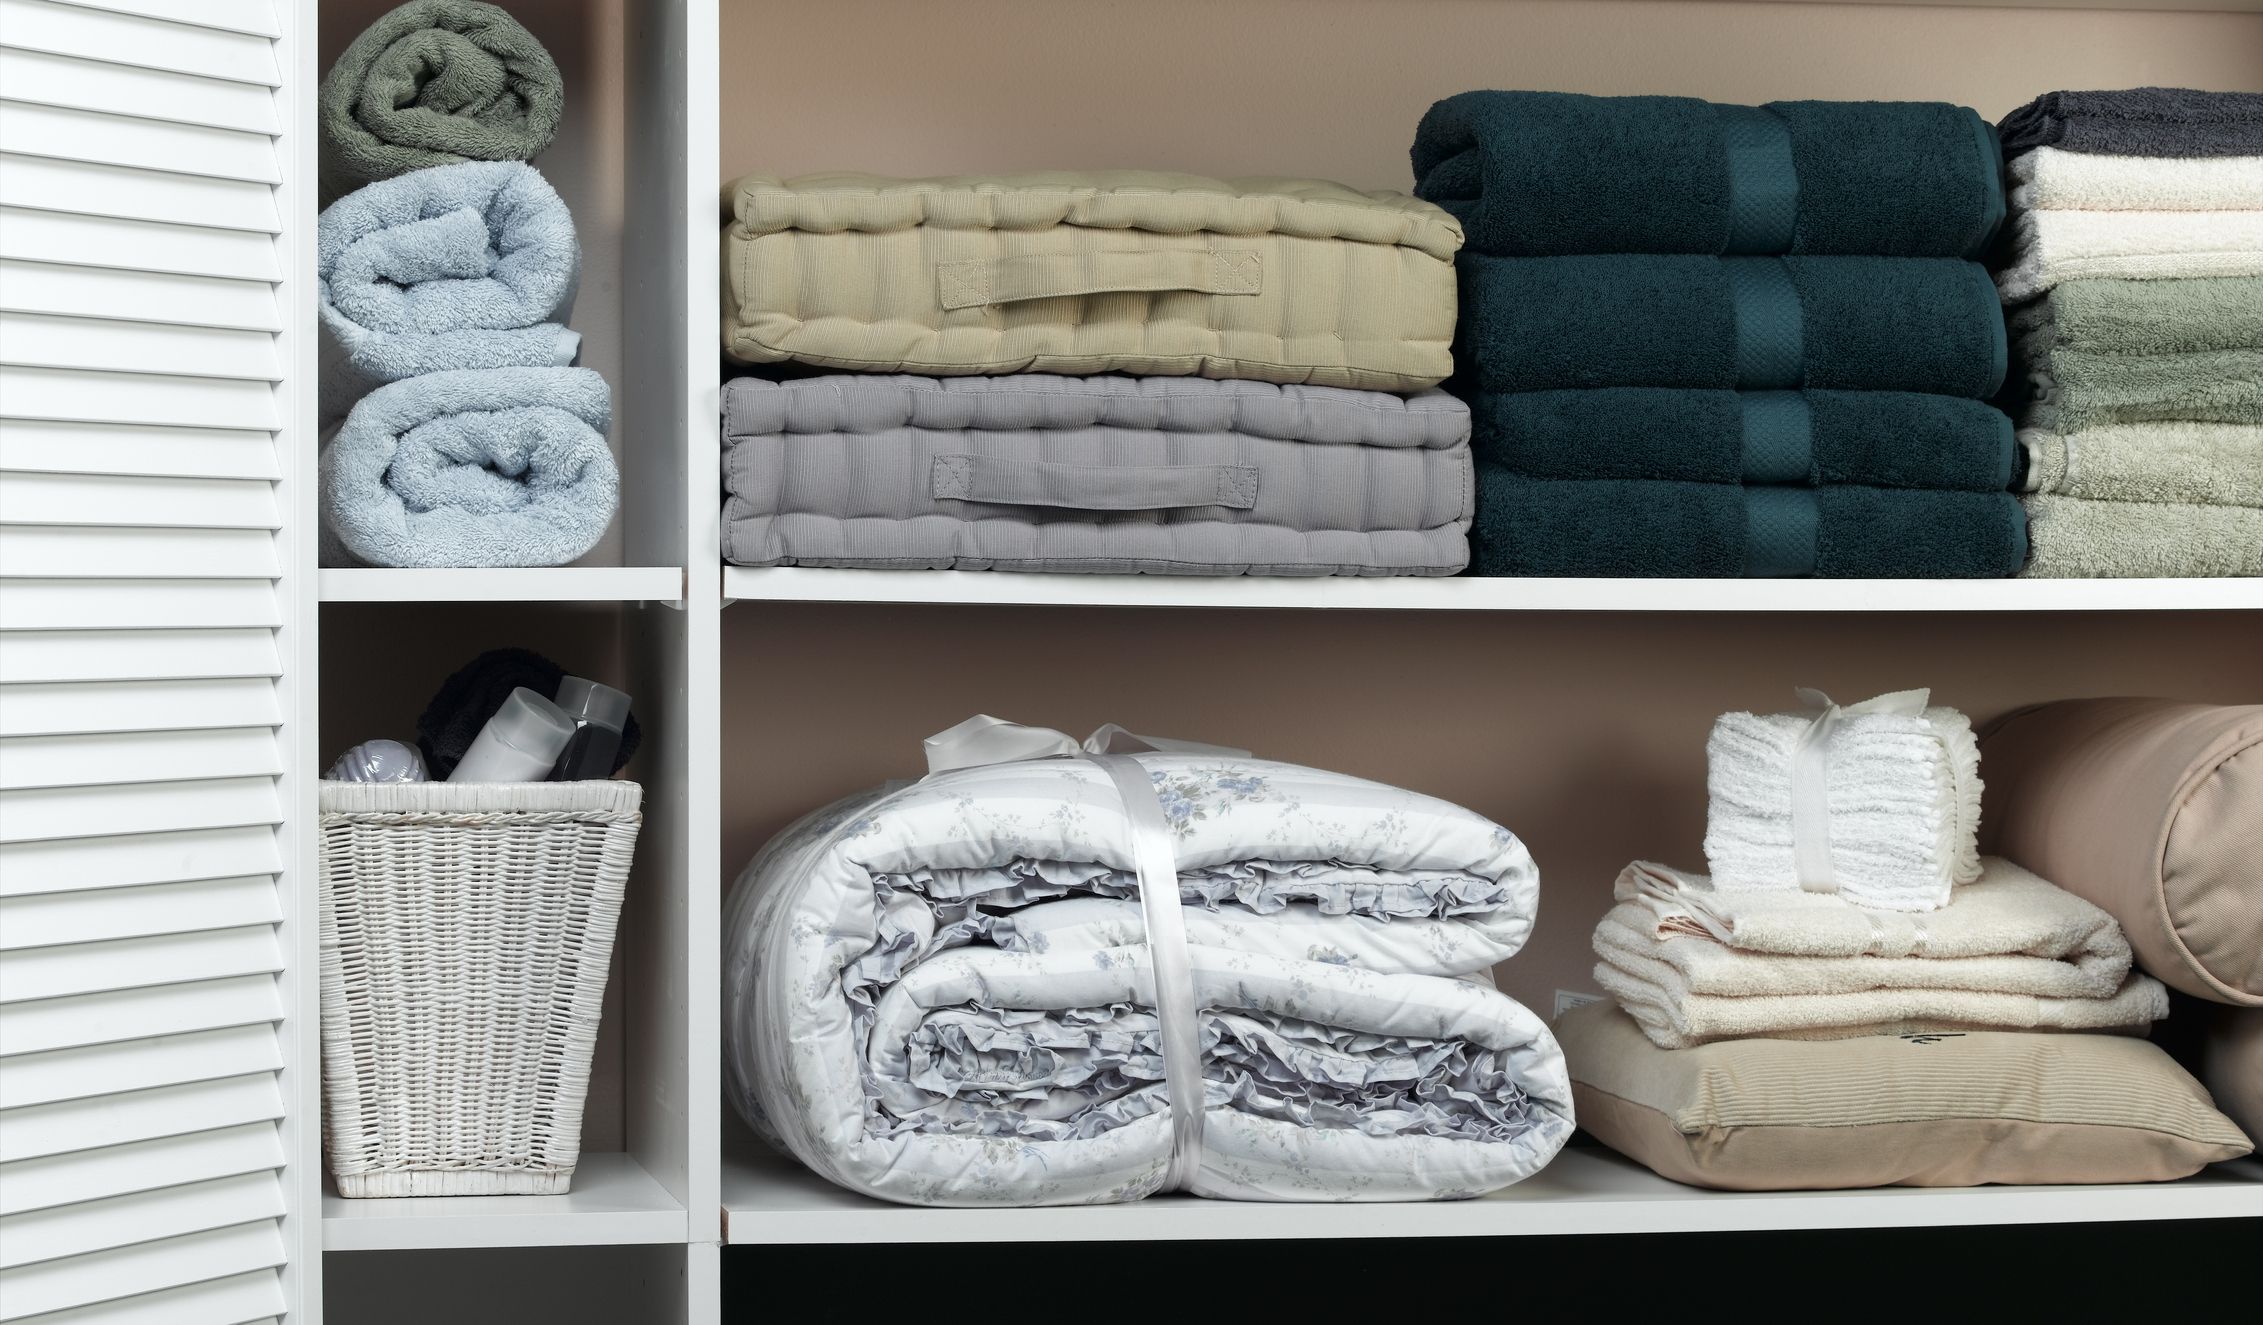 13 Best Linen Closet Organization Ideas - How To Organize a Linen Closet